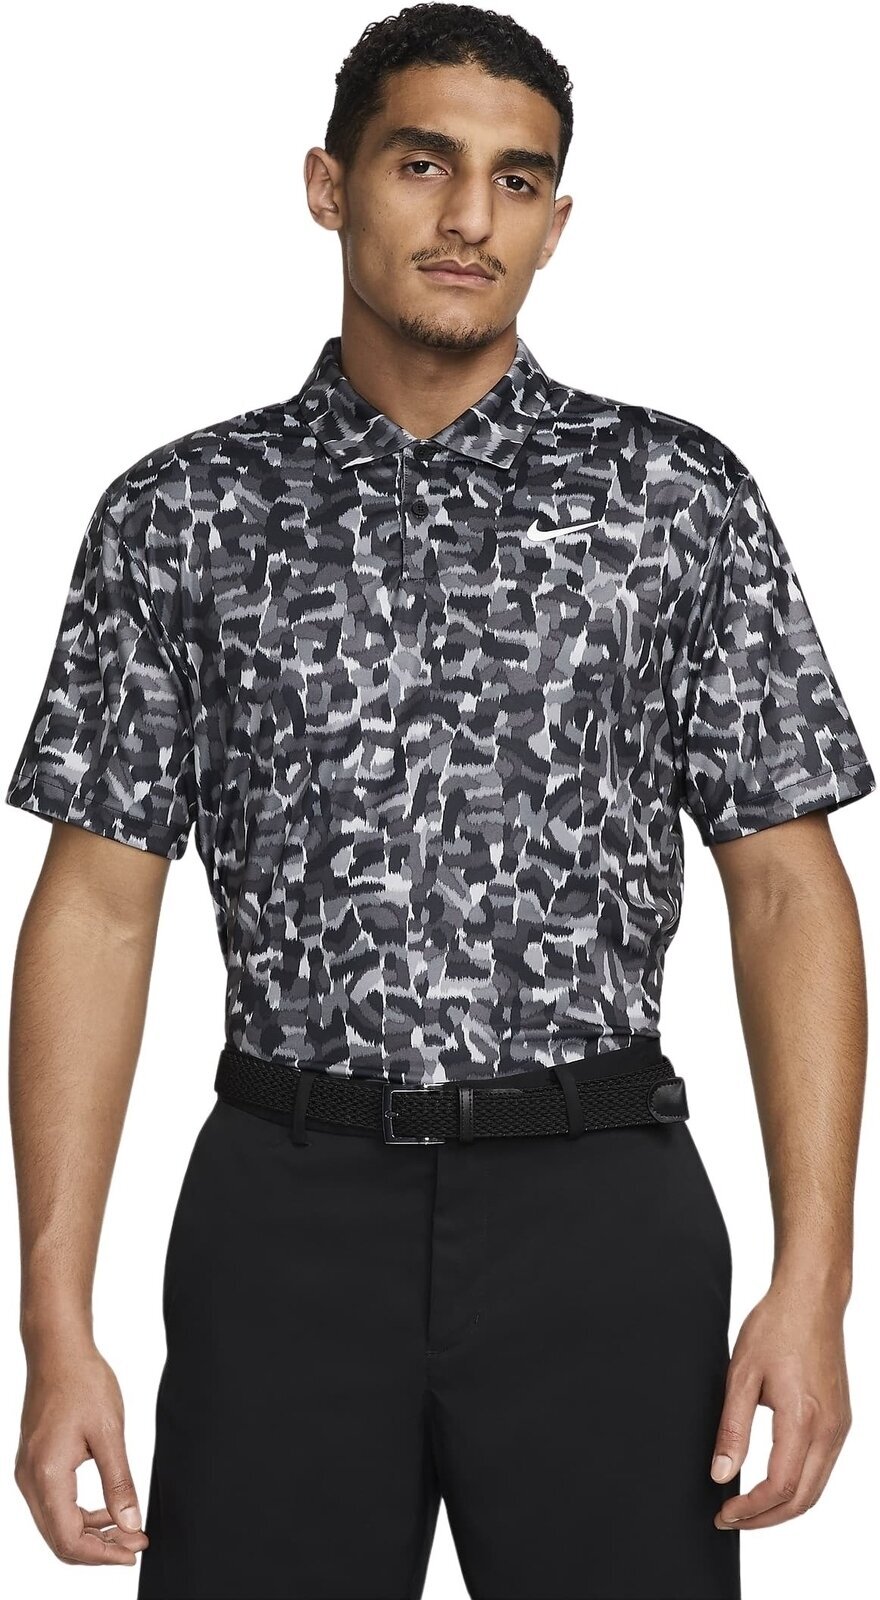 Polo Shirt Nike Dri-Fit Tour Confetti Print Mens Polo Light Smoke Grey/White M